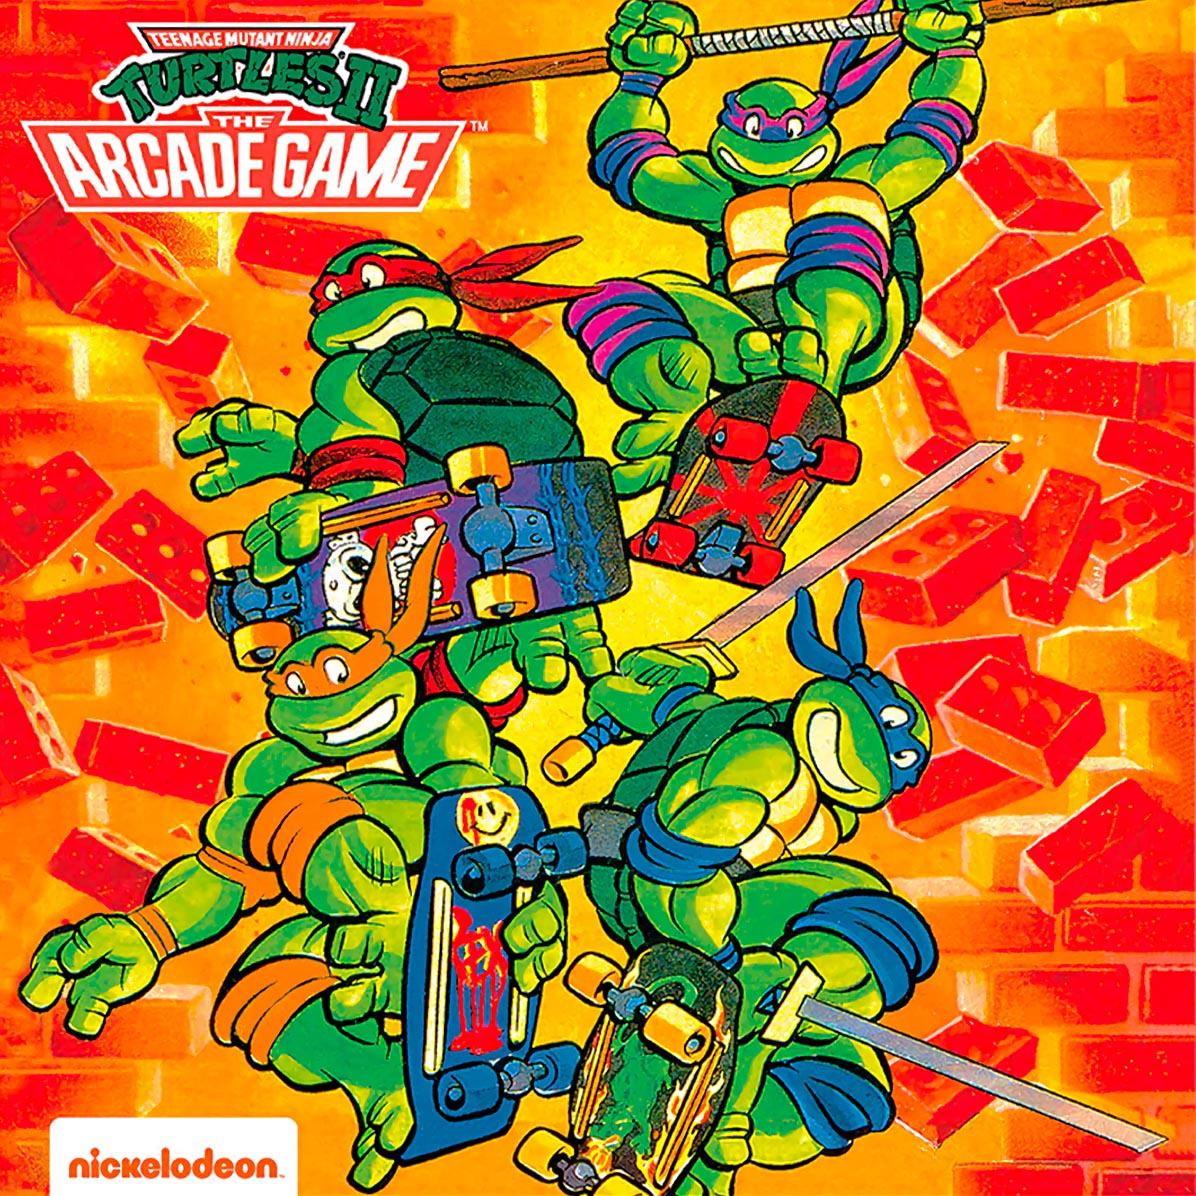 Teenage Mutant Ninja Turtles II:The Arcade Game